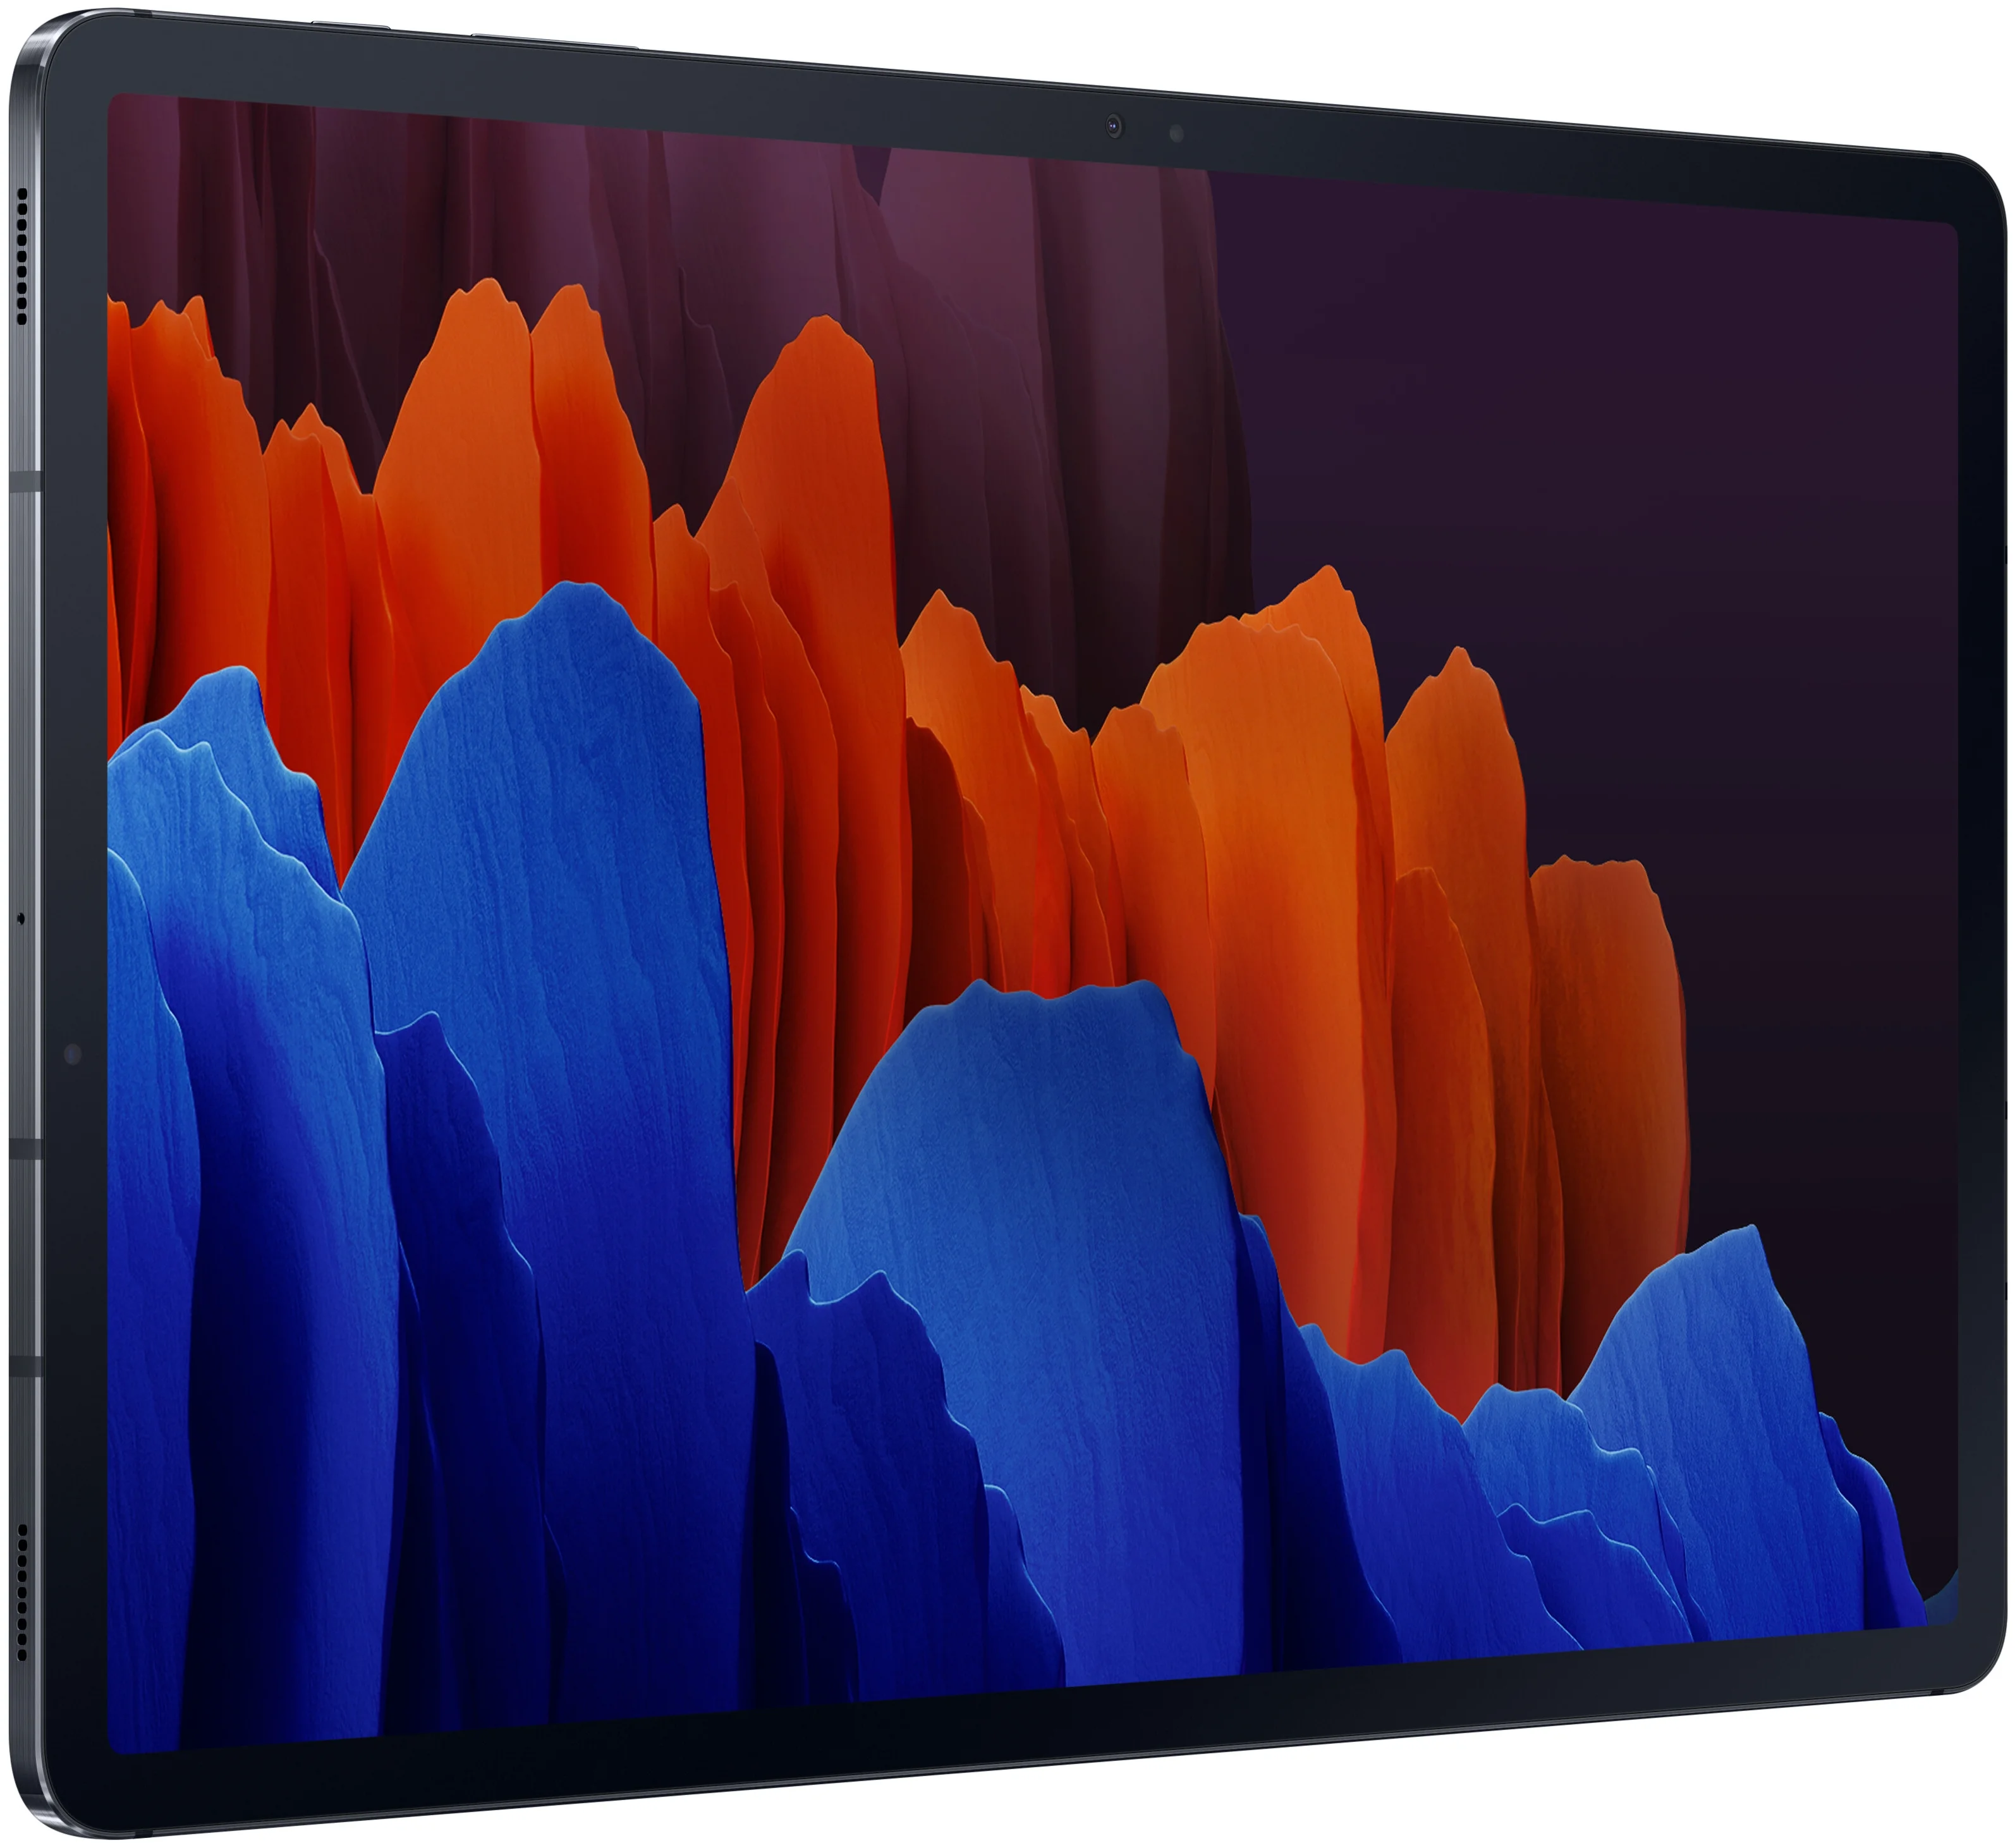 Samsung Galaxy Tab S7+ 12.4 SM-T975 128Gb (2020) - встроенная память: 128 ГБ, слот microSDXC